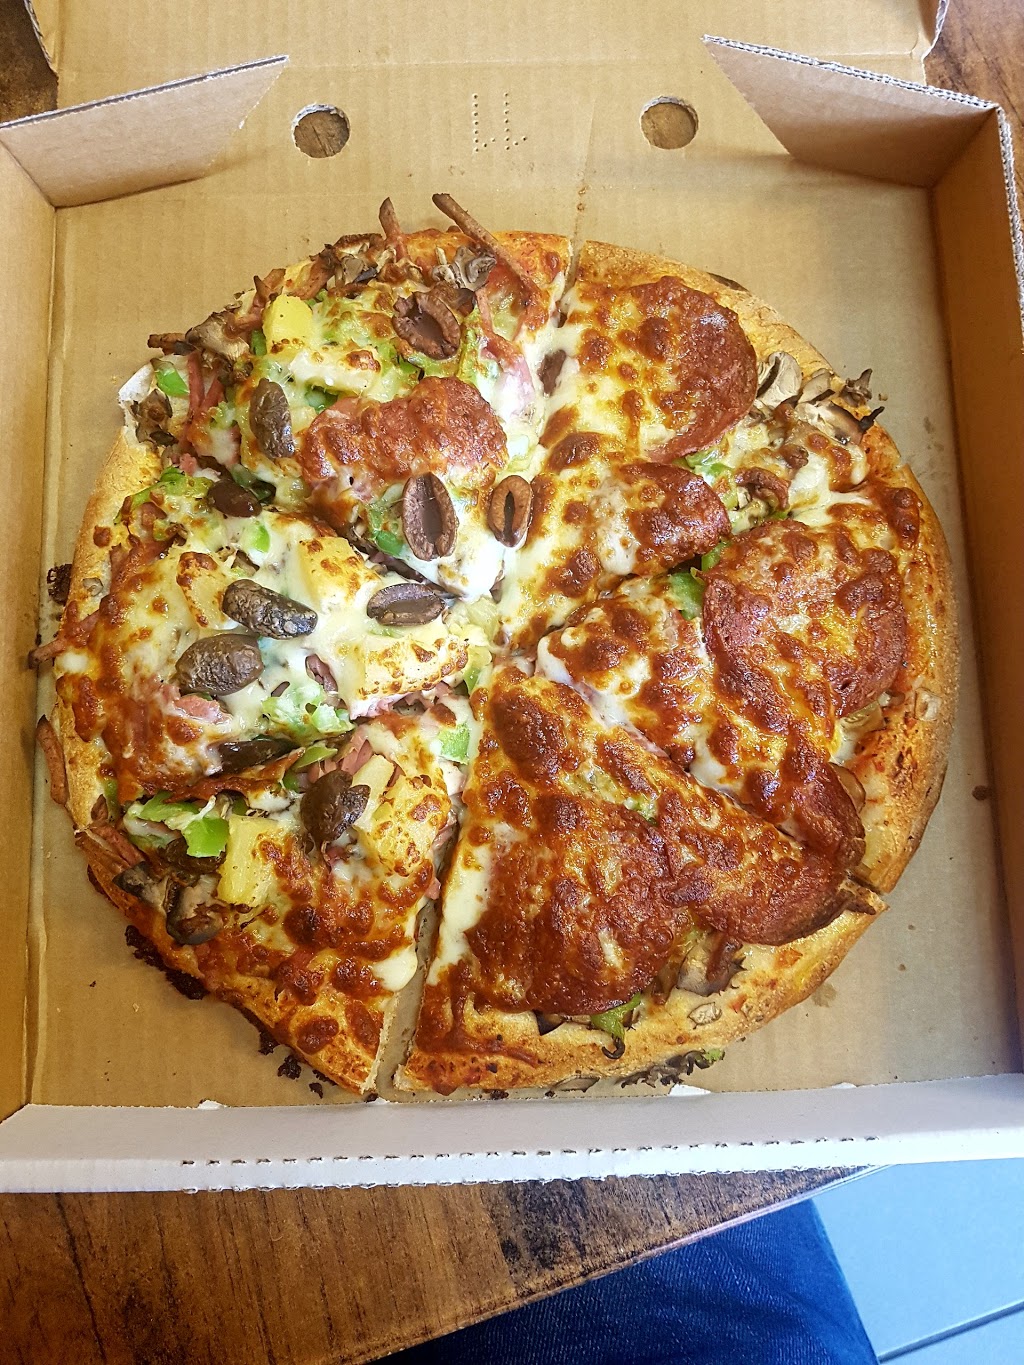 Pizza Plus (Delivery & Takeaway) | 3/5 Lynton Pl, Scoresby VIC 3179, Australia | Phone: (03) 9763 2099